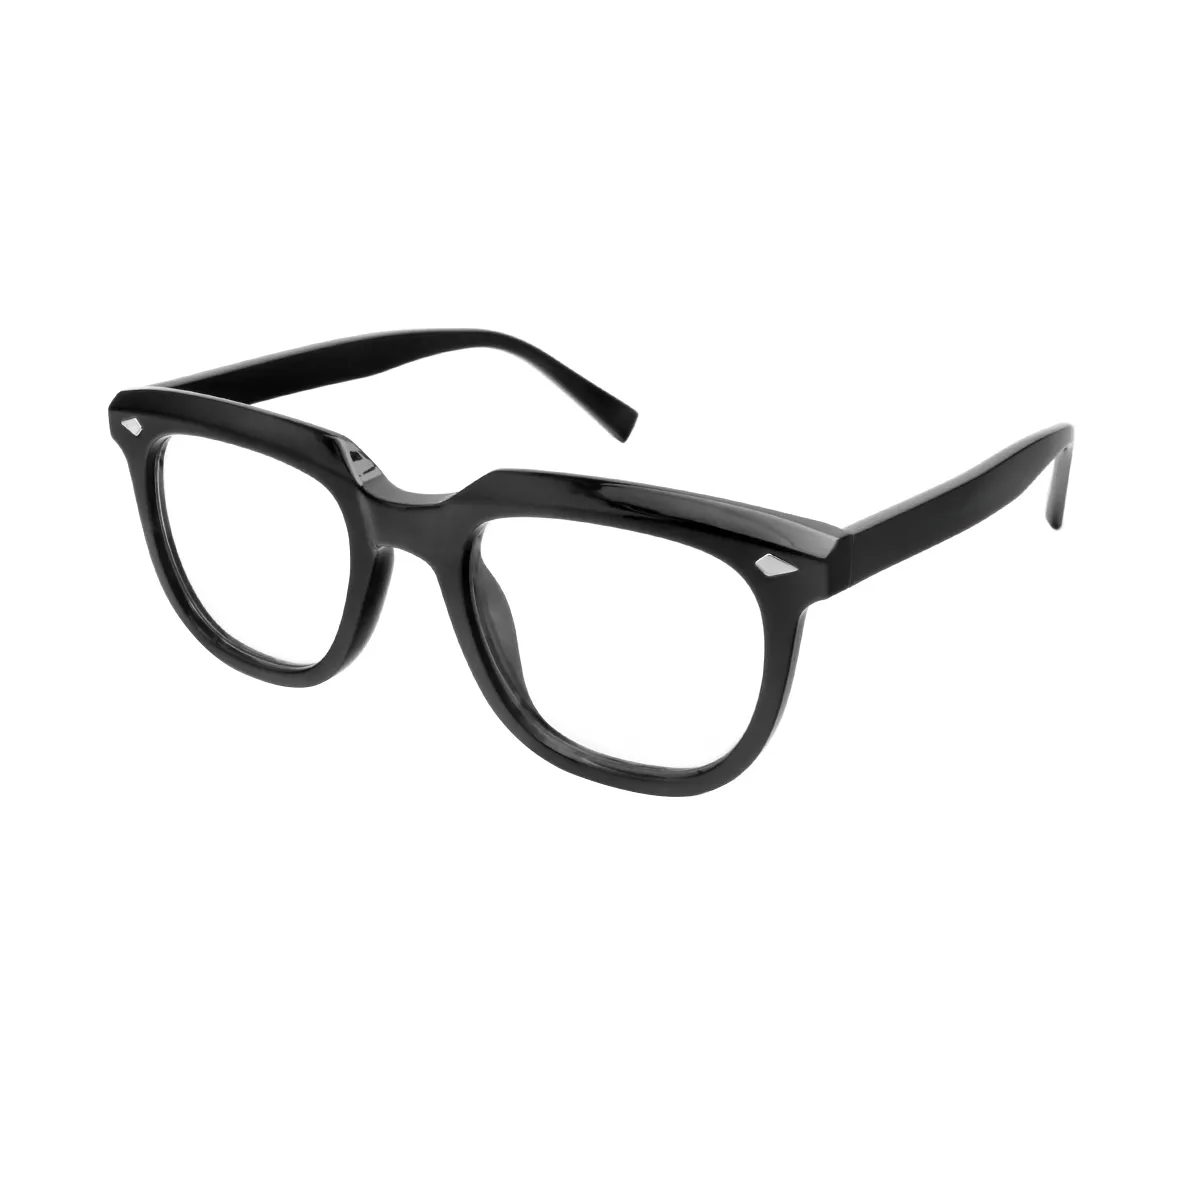 Rouse - Square Black Glasses for Men & Women - EFE